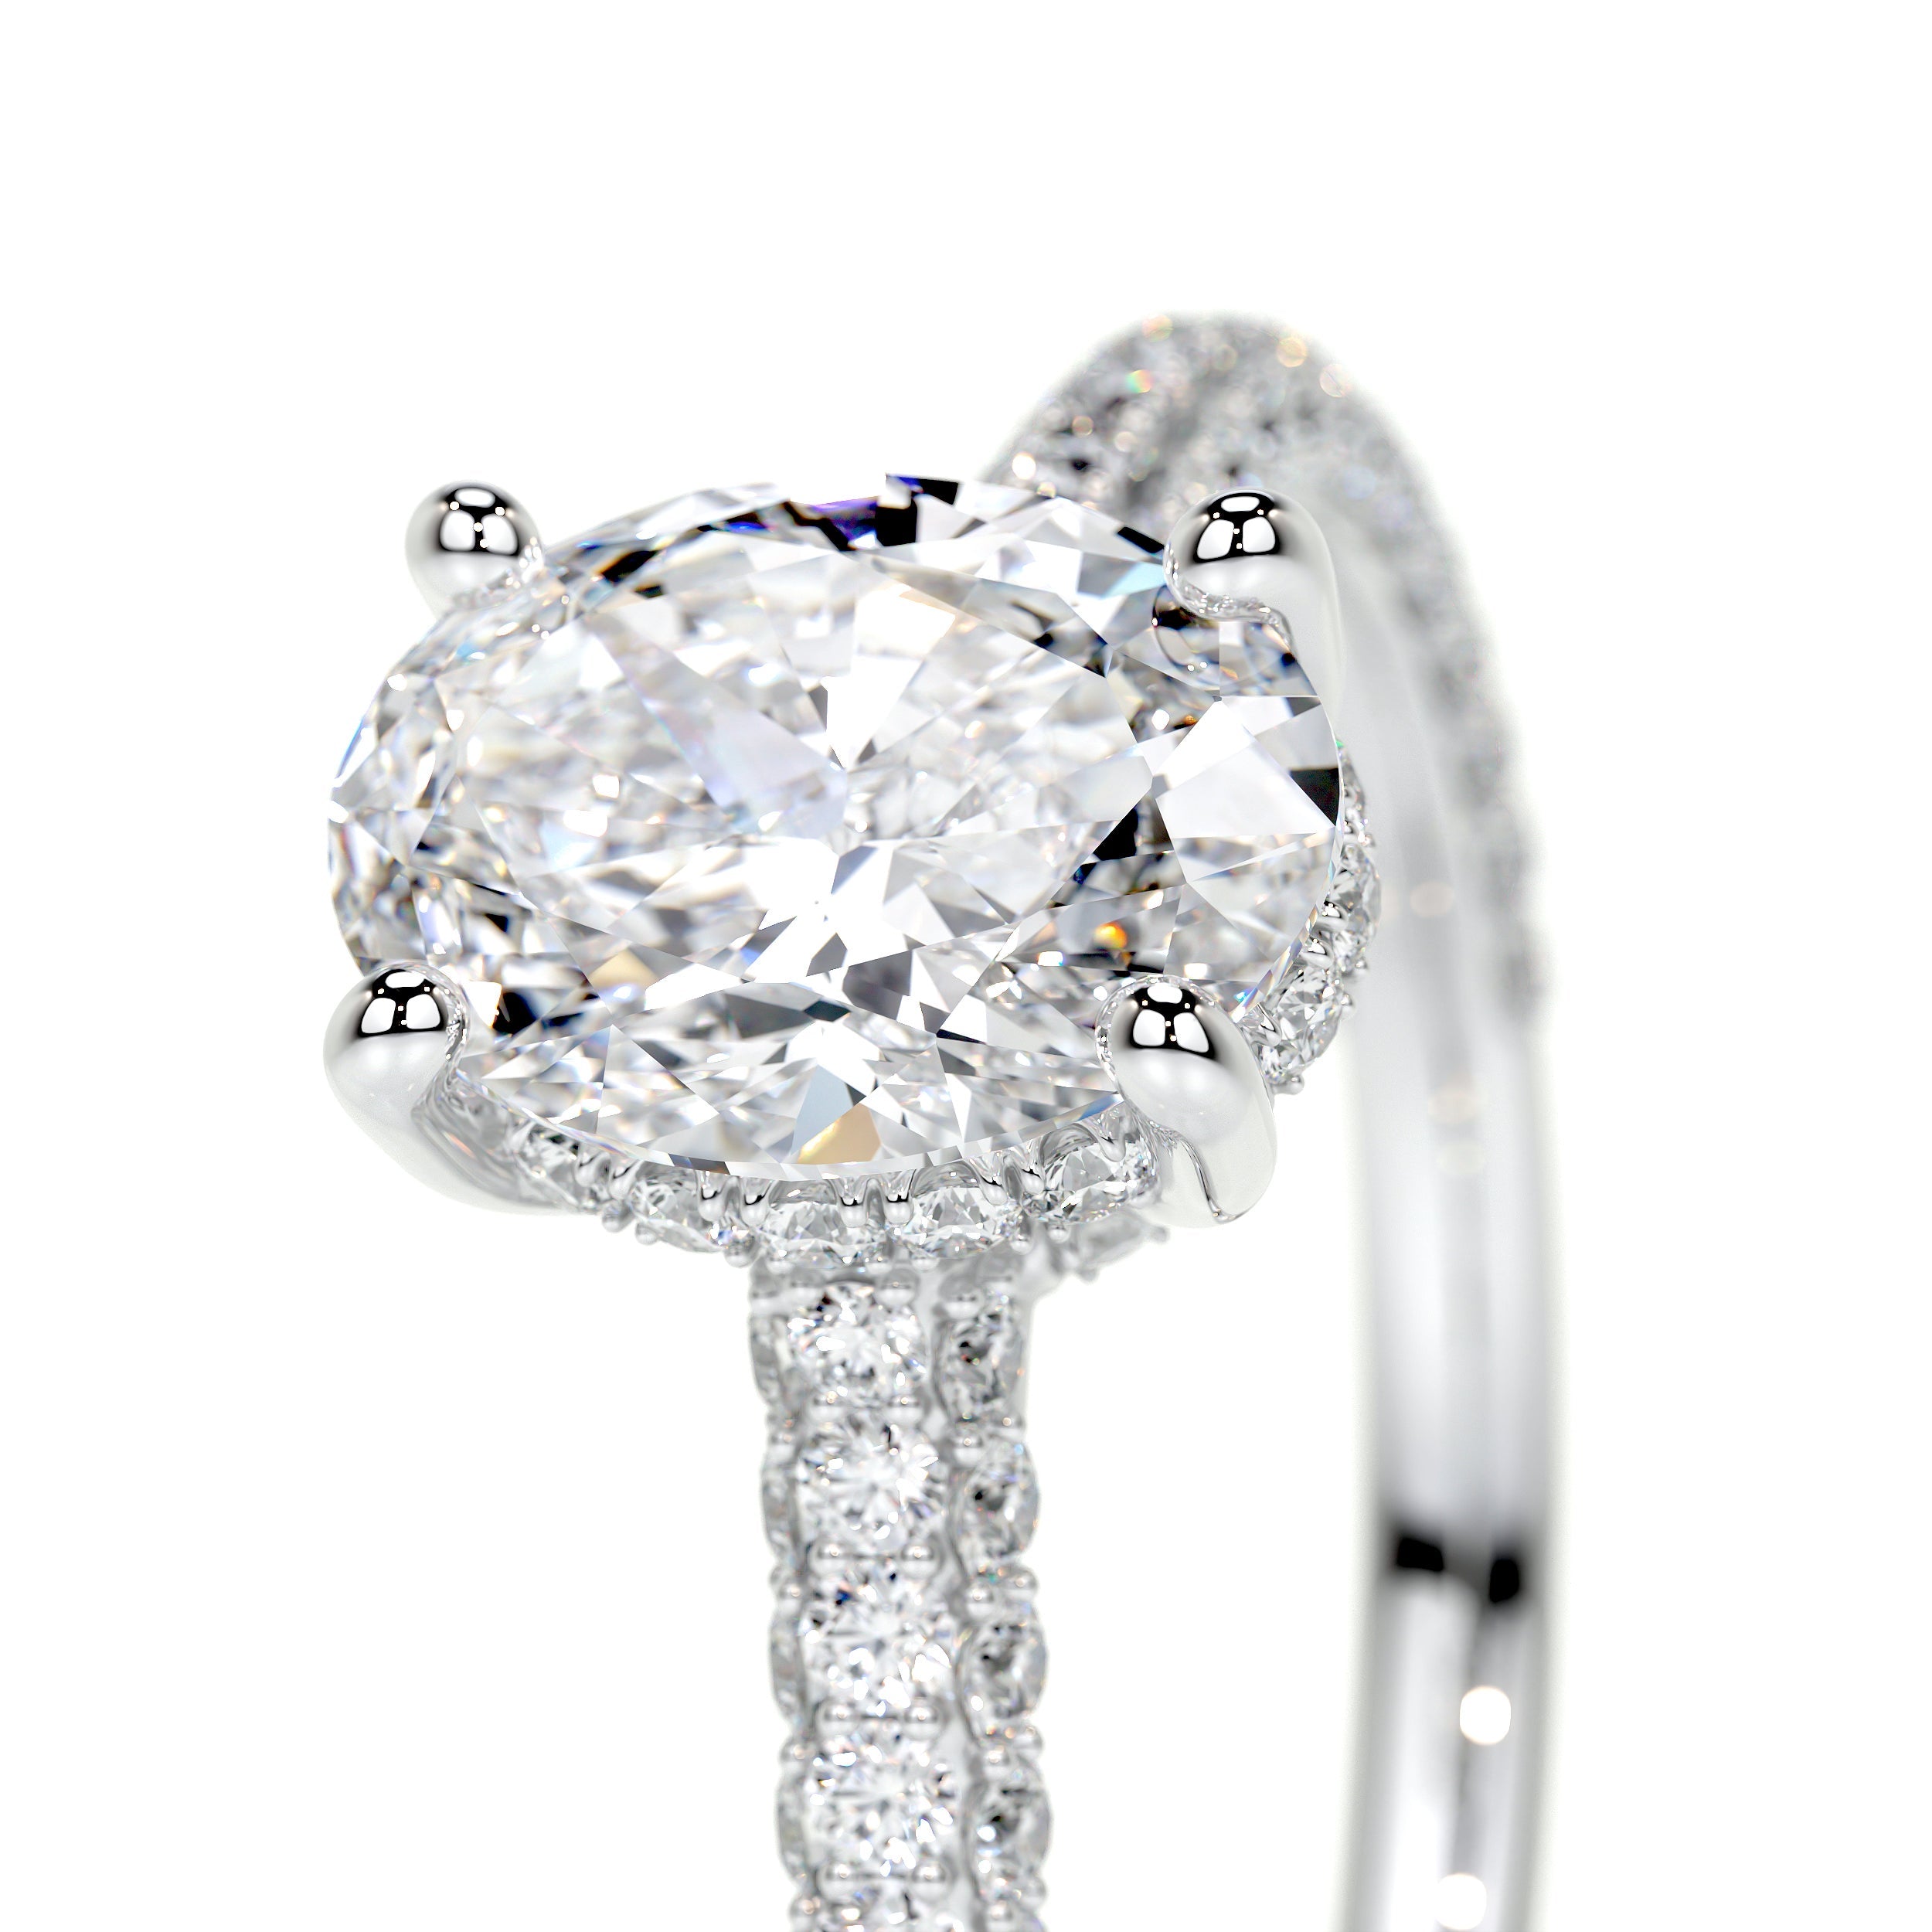 Rebecca Lab Grown Diamond Ring   (2.5 Carat) -18K White Gold